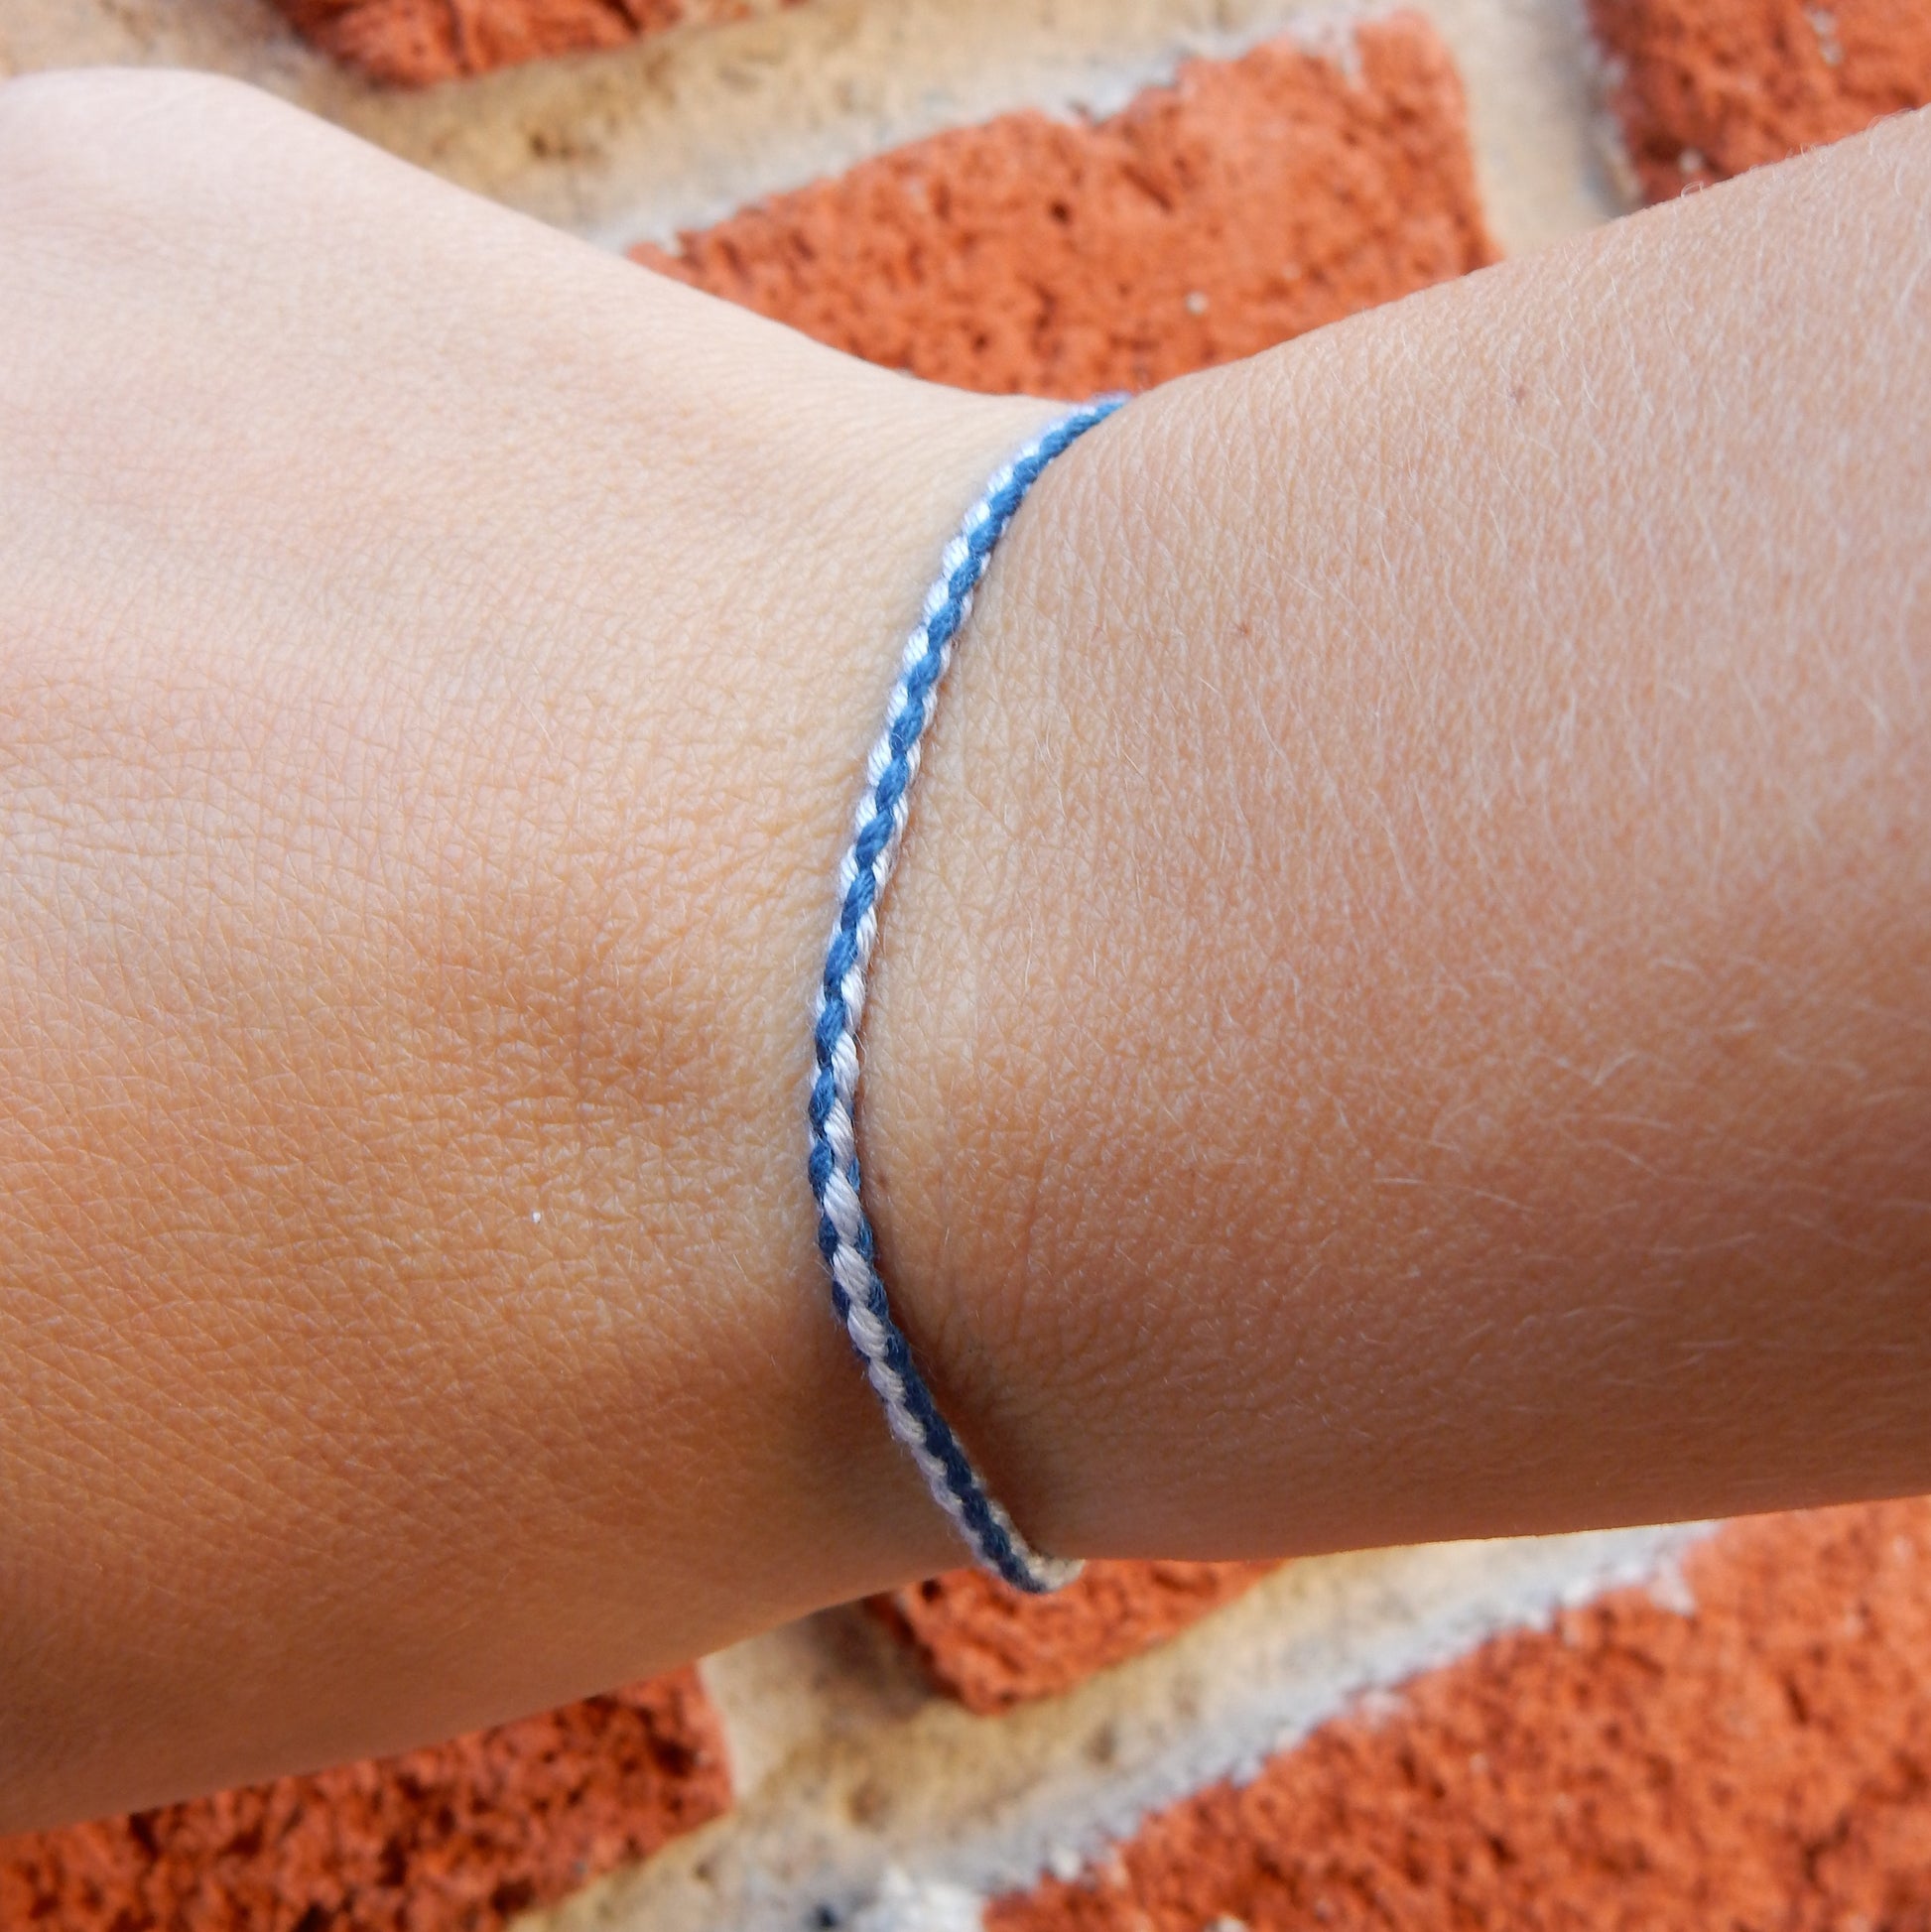 Laos armband (blauw/wit) - www.mundobracelets.com